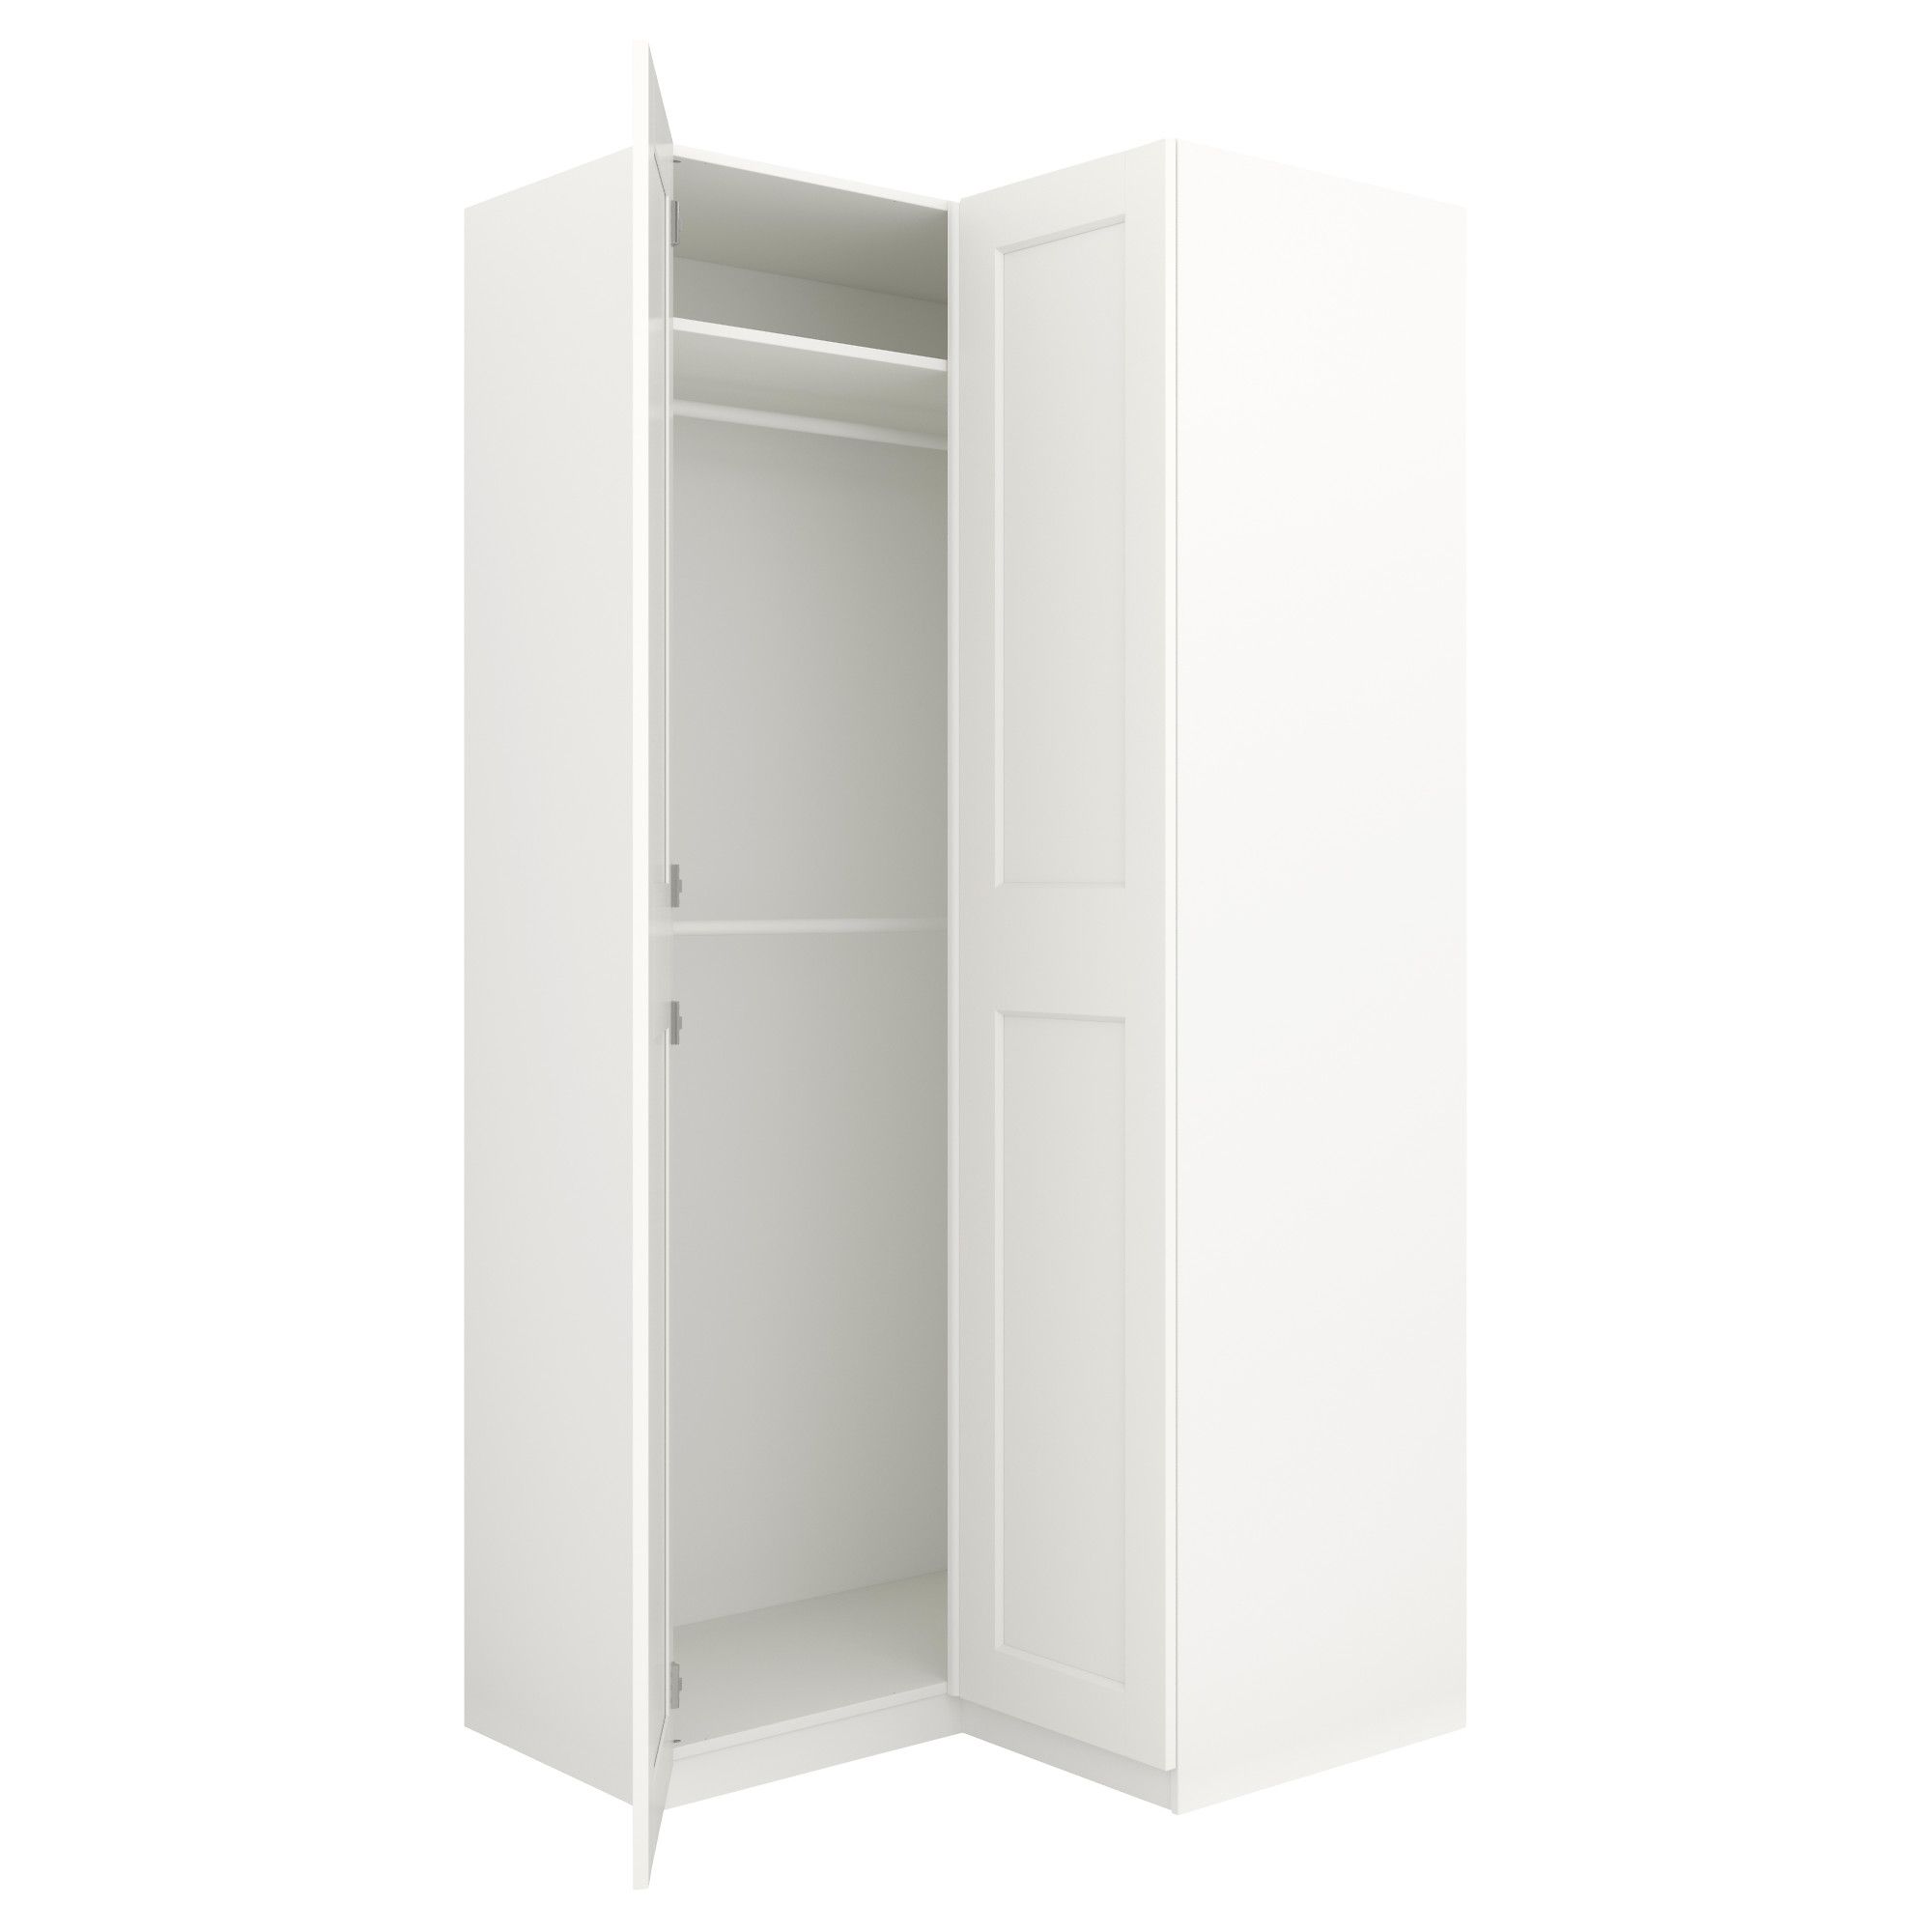 1 Door Corner Wardrobes In Well Known Pax Corner Wardrobe – Ikea (View 5 of 15)